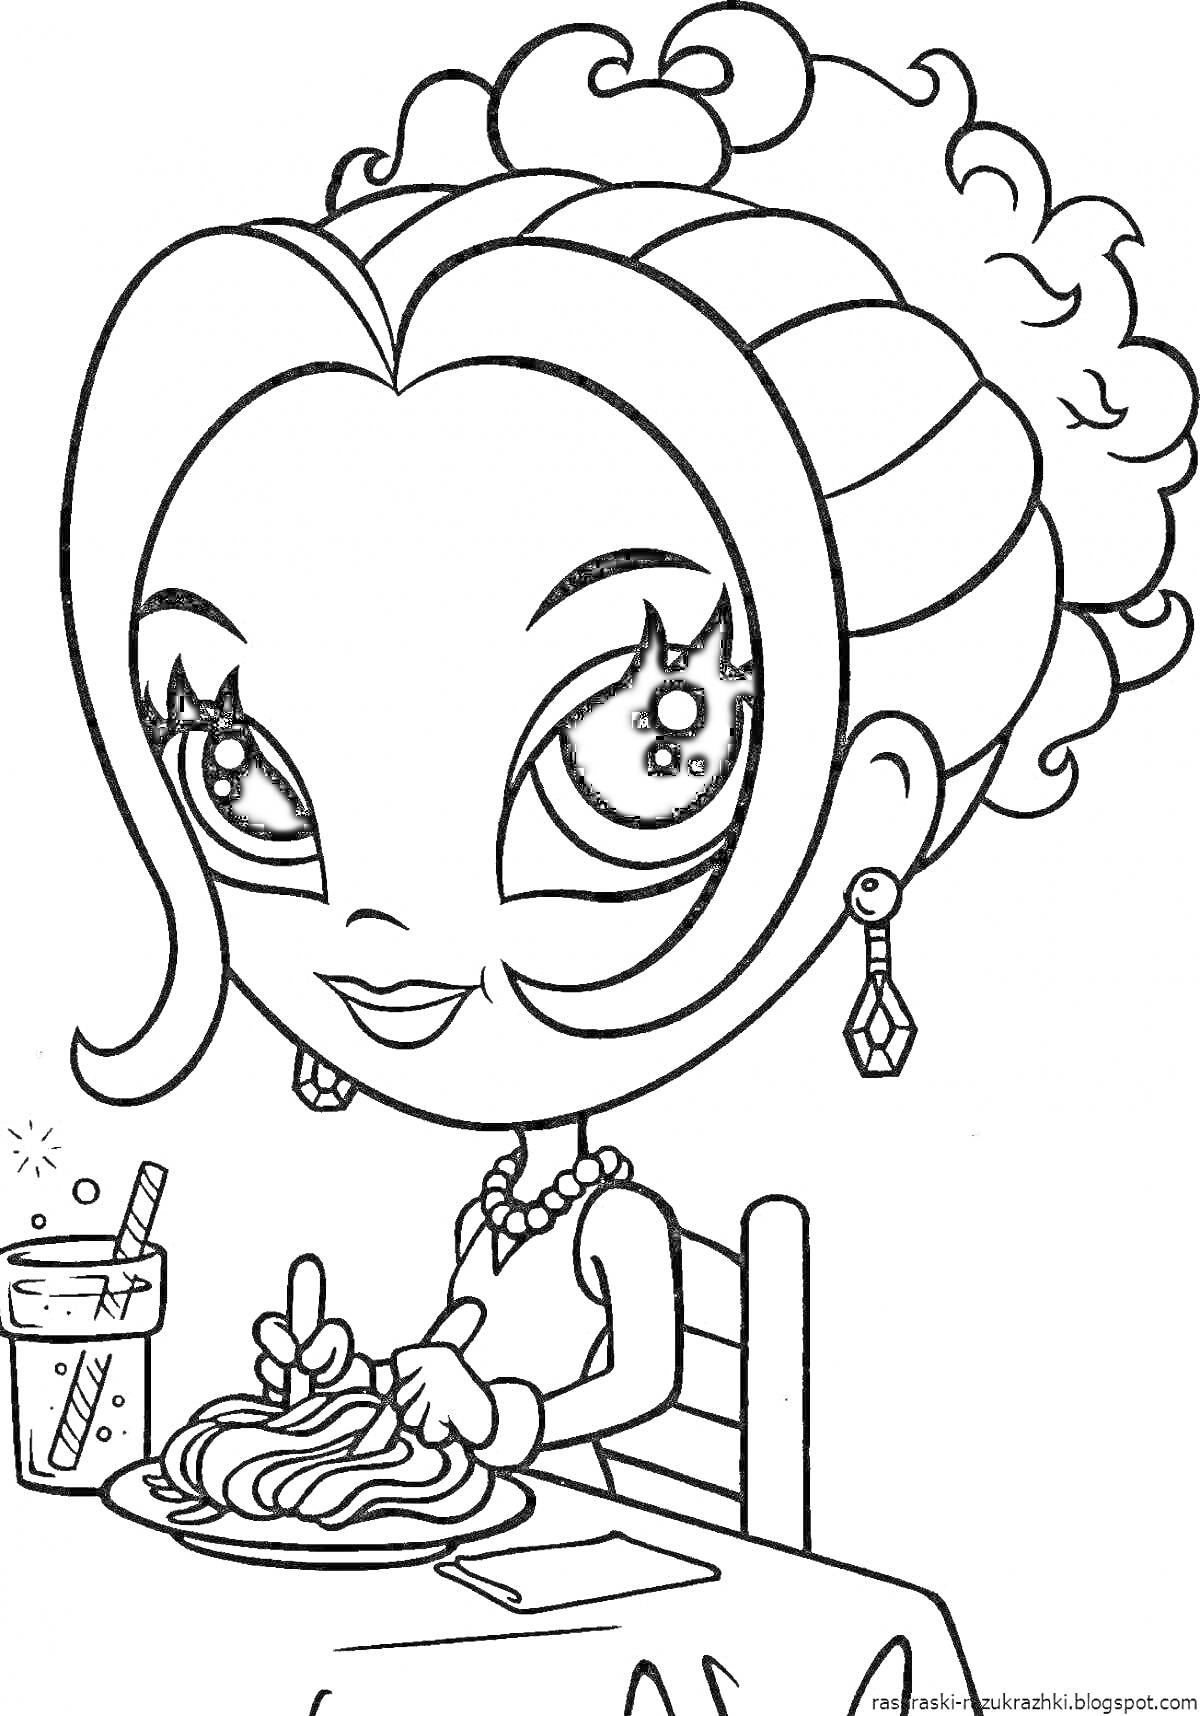 Девочка с большими глазами, сидящая за столом, с тарелкой спагетти и стаканом